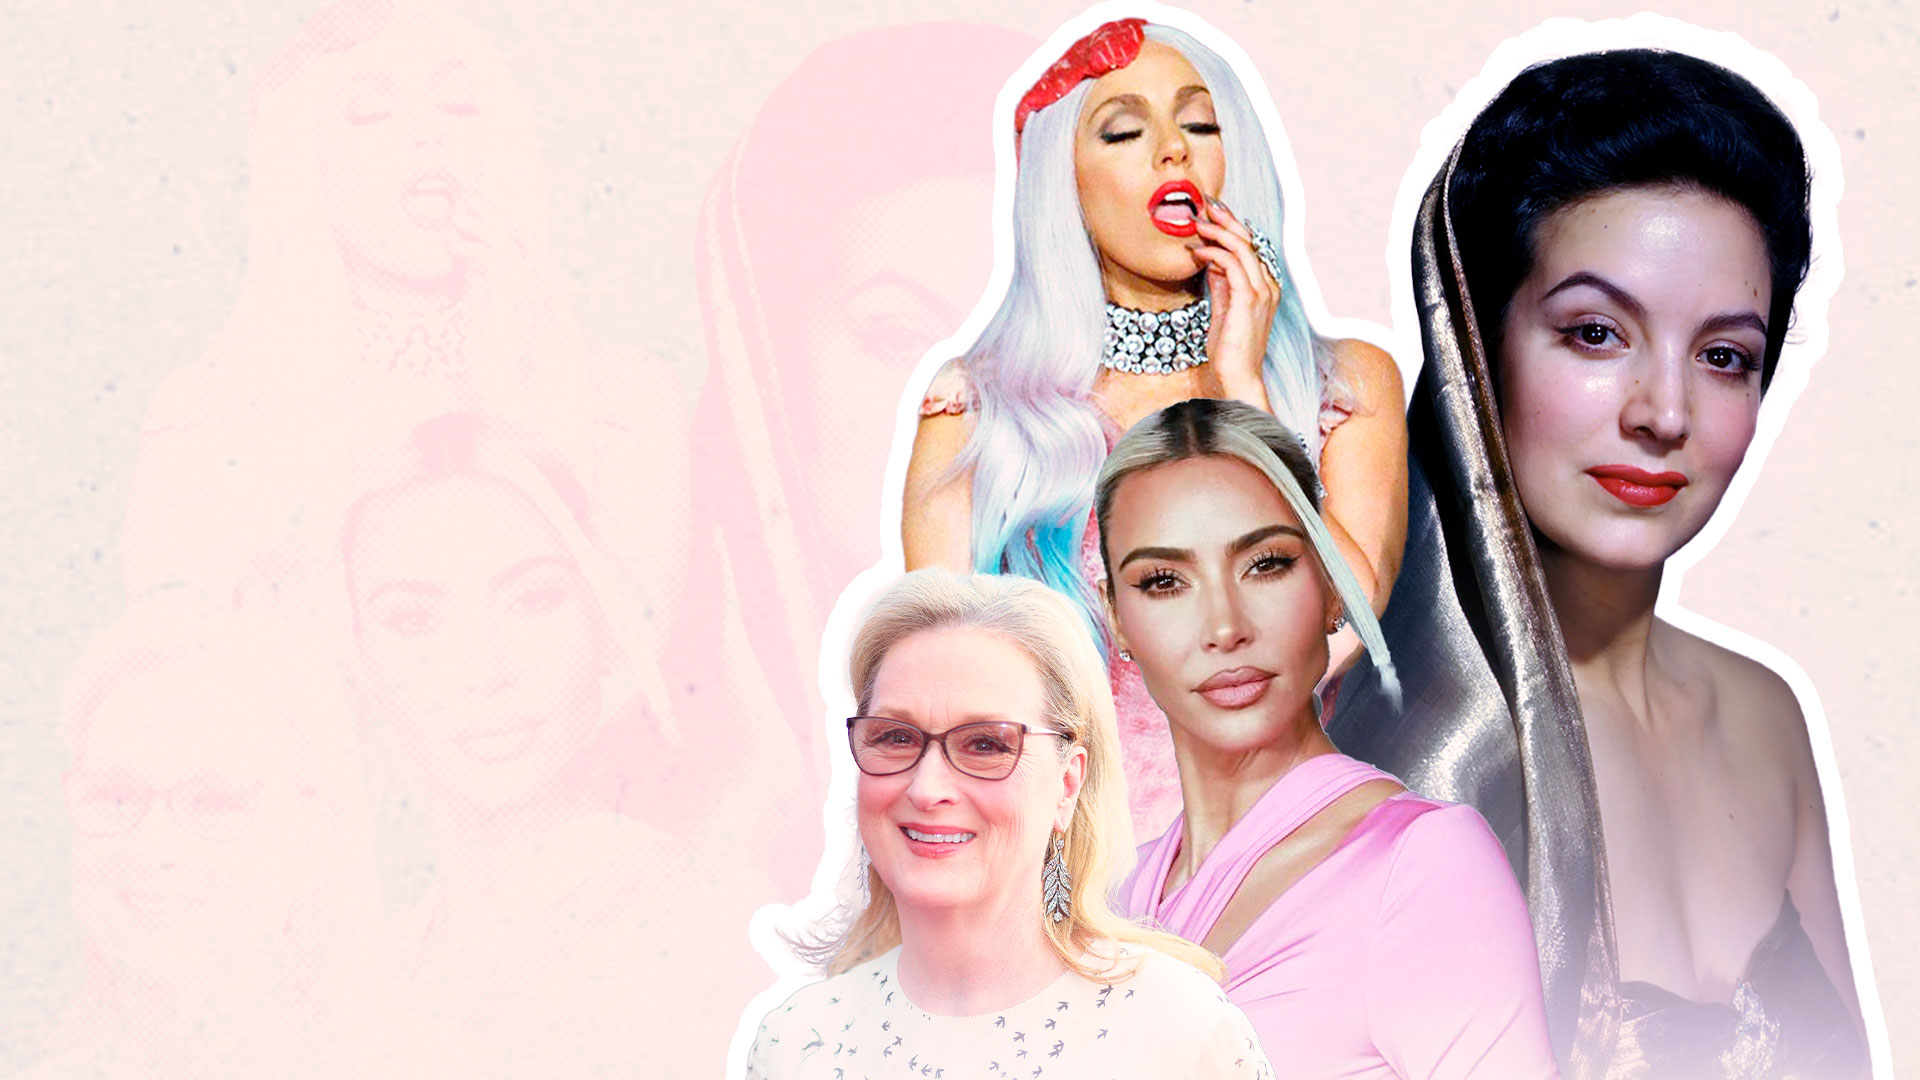 De Kim Kardashian a Meryl Streep: las joyas más espectaculares que lucieron las estrellas